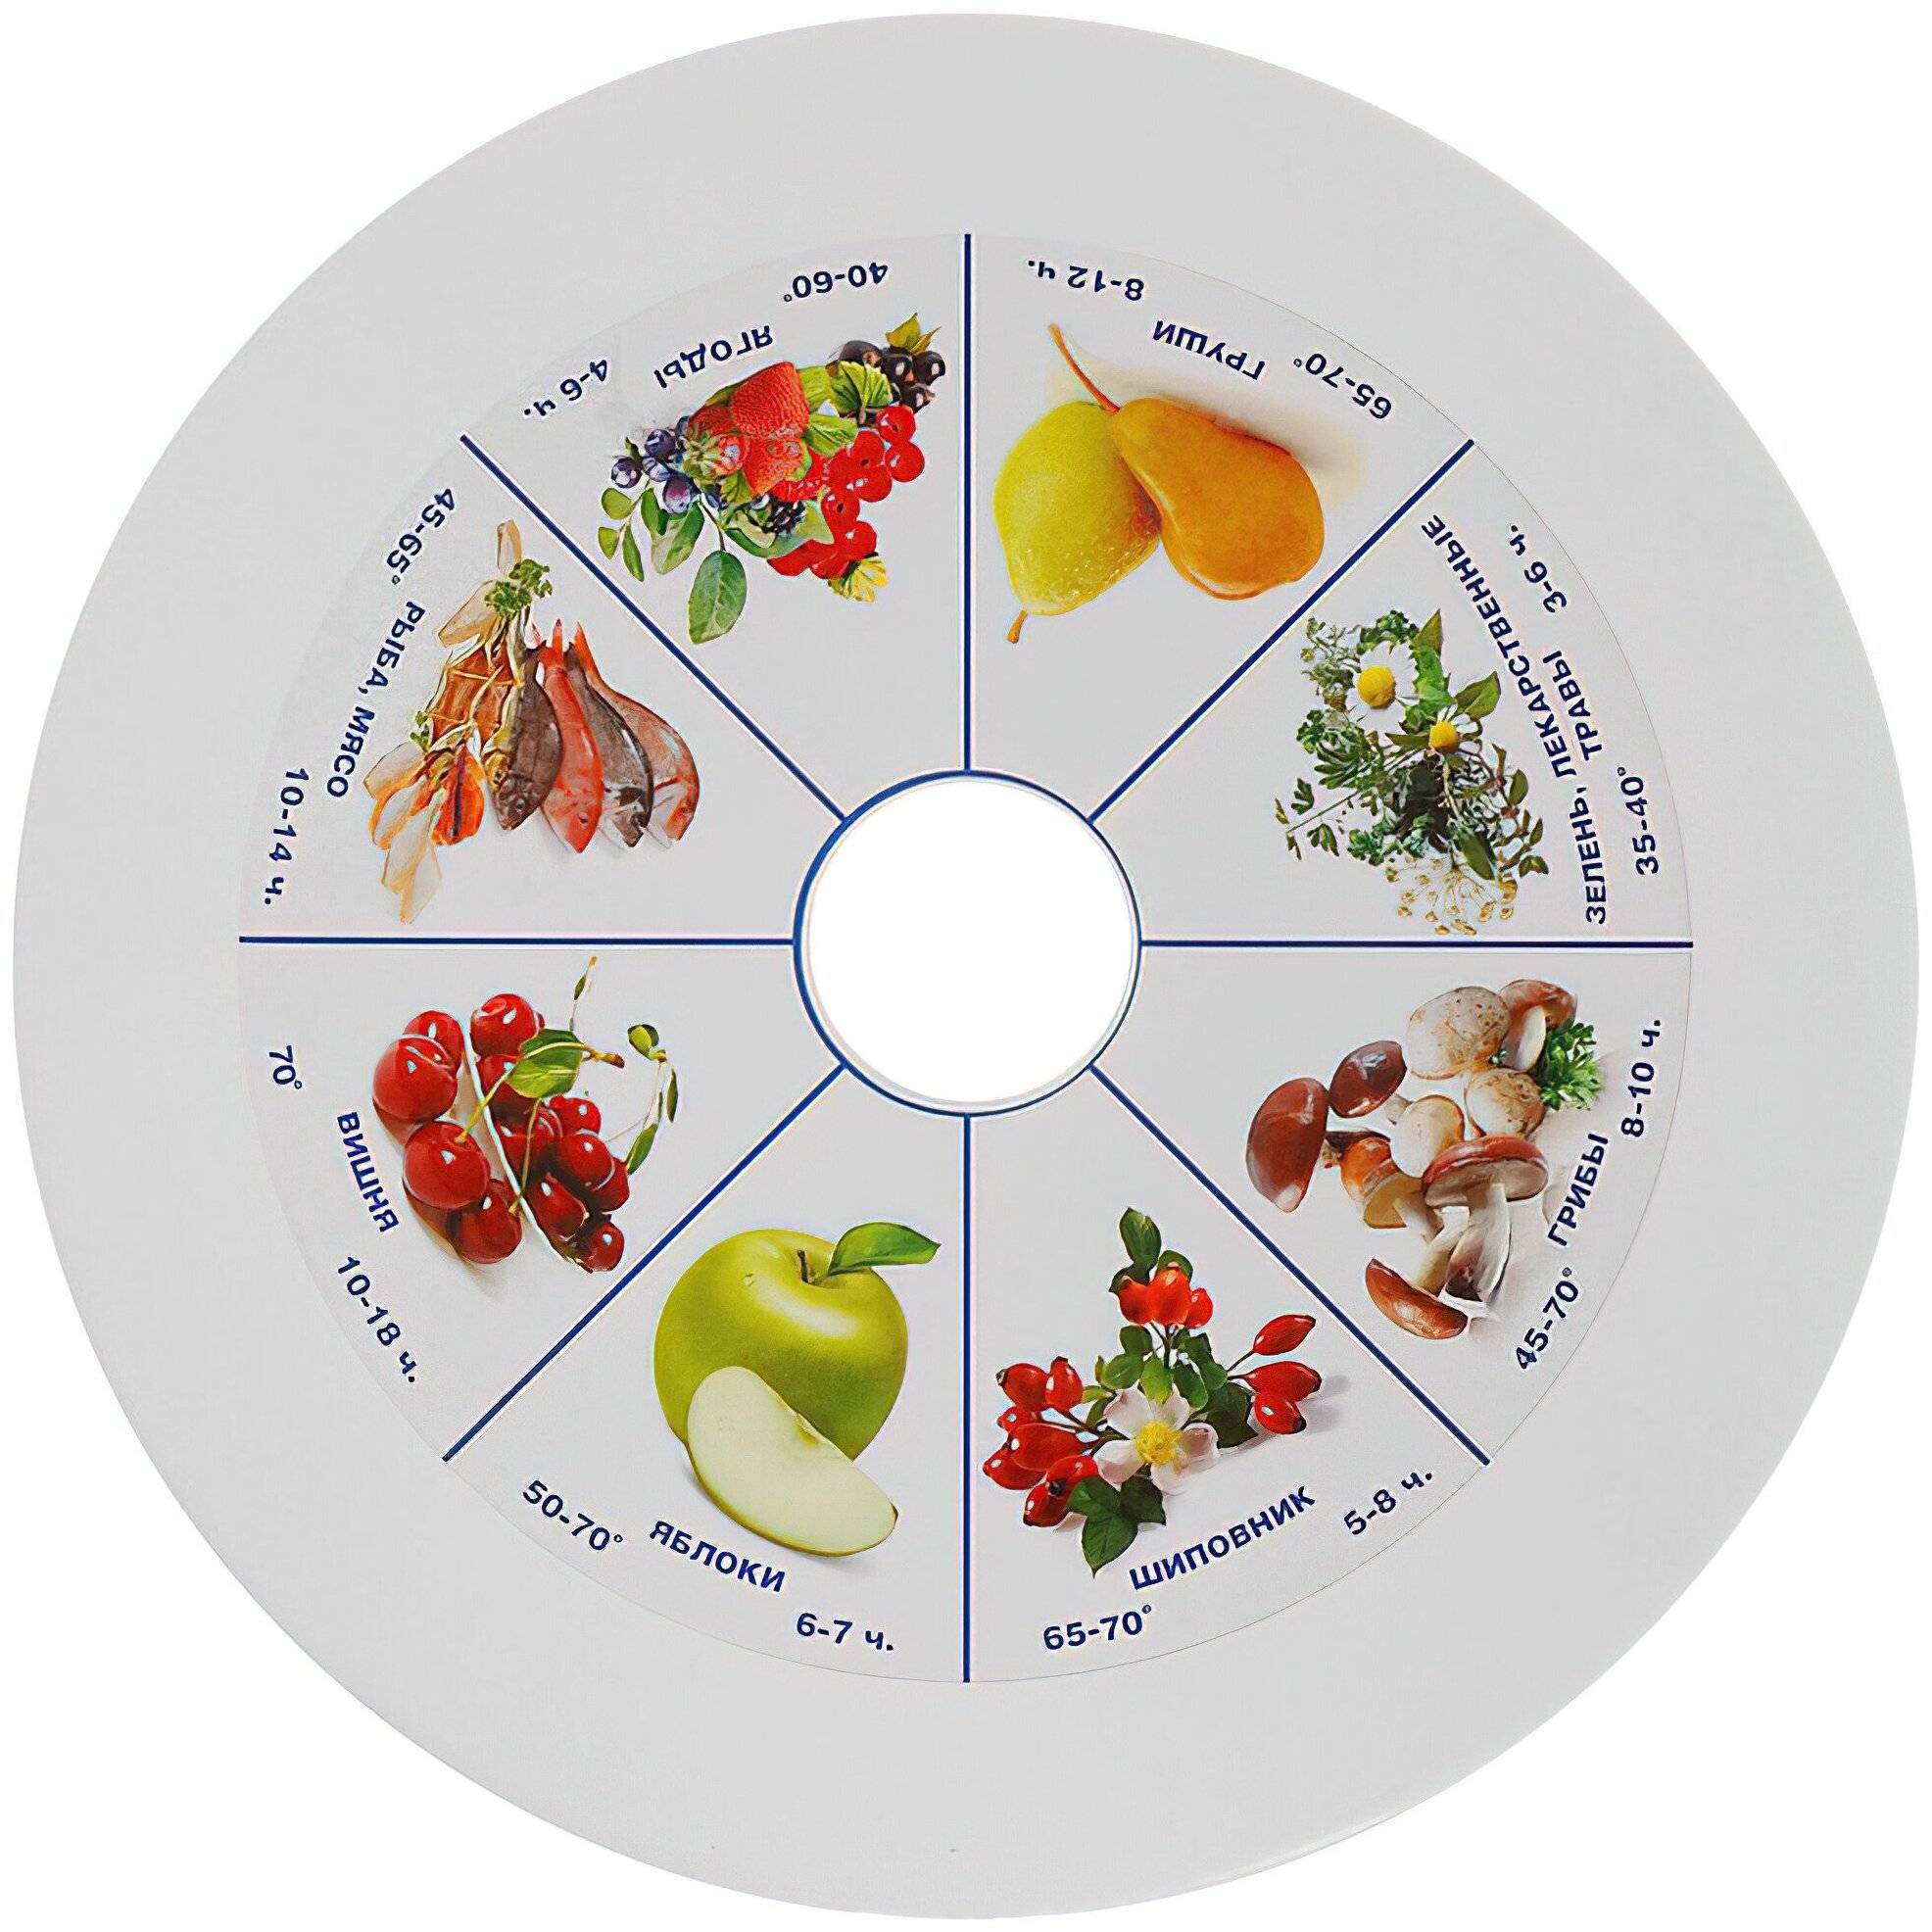 Как выбрать лучшую сушилку для овощей и фруктов: их виды, характеристики, рекомендации по подбору, обзор и рейтинг популярных моделей, их плюсы и минусы, советы по уходу